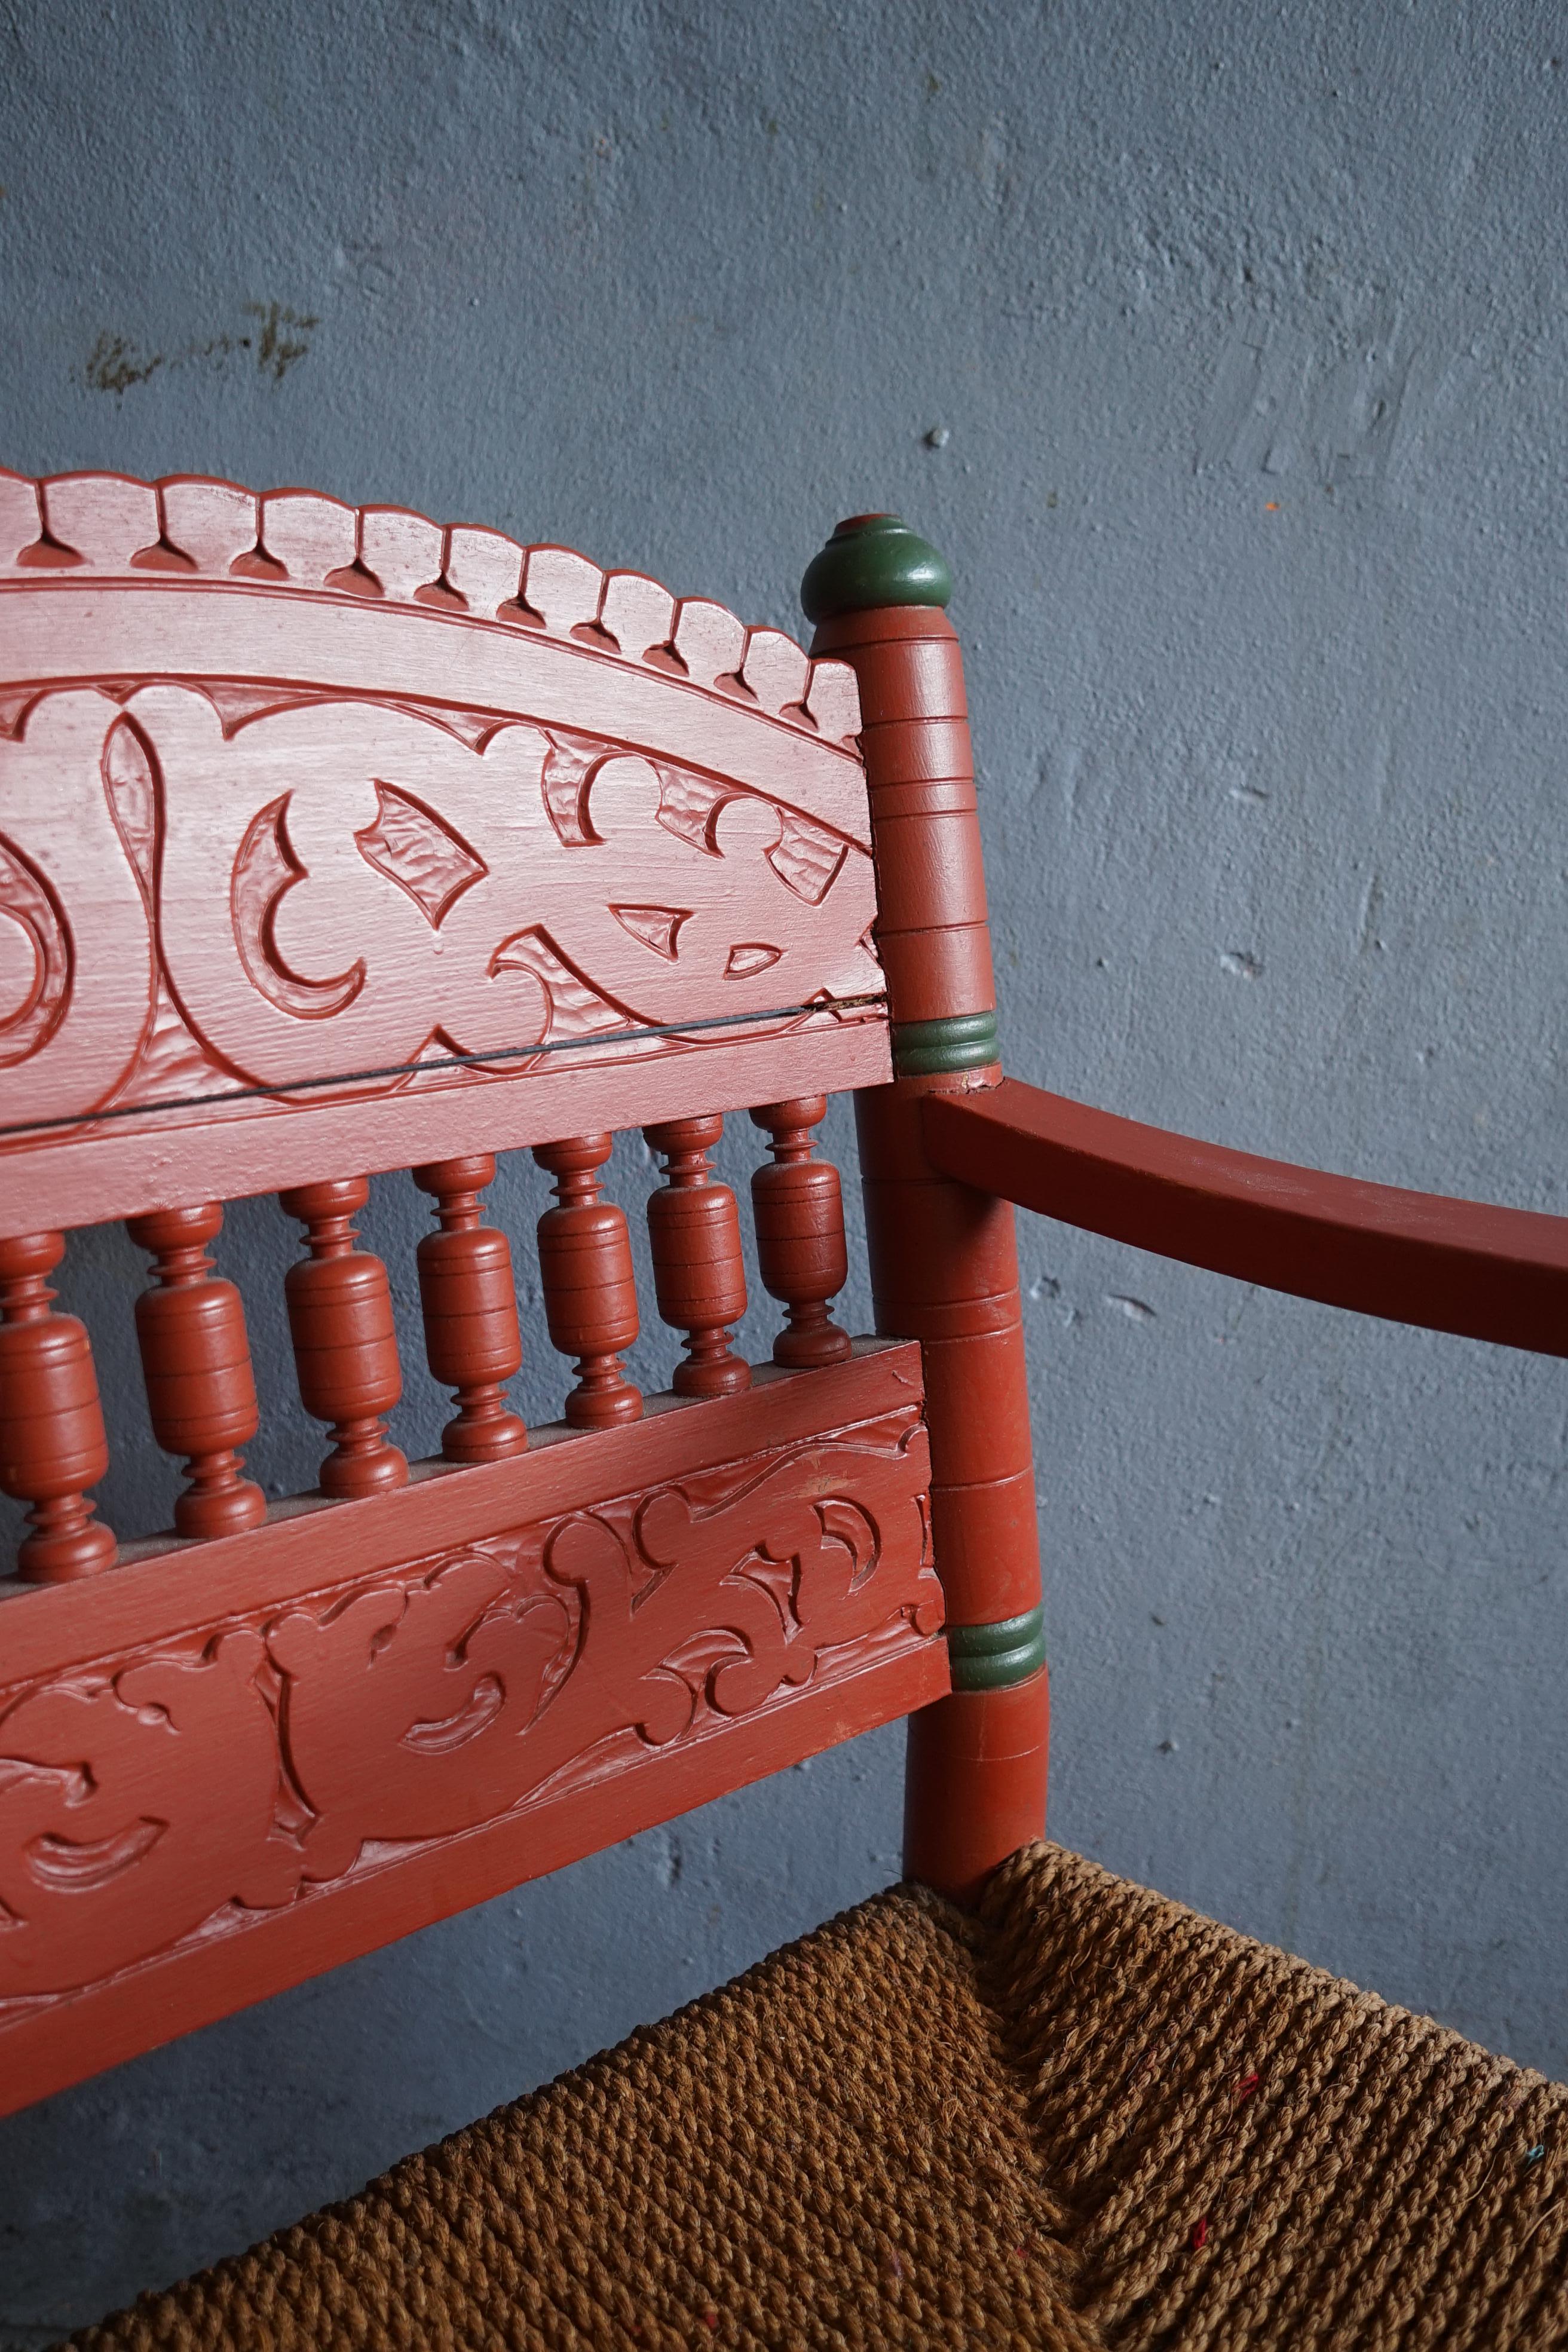 Dekorativer Seltener norwegischer Volkskunststuhl mit dem originalen rot und grün bemalten Holz und dem originalen Seegrasband aus den 1850er Jahren.

Der Stuhl ist aus Massivholz von einem erfahrenen Handwerker gefertigt und hat eine schöne